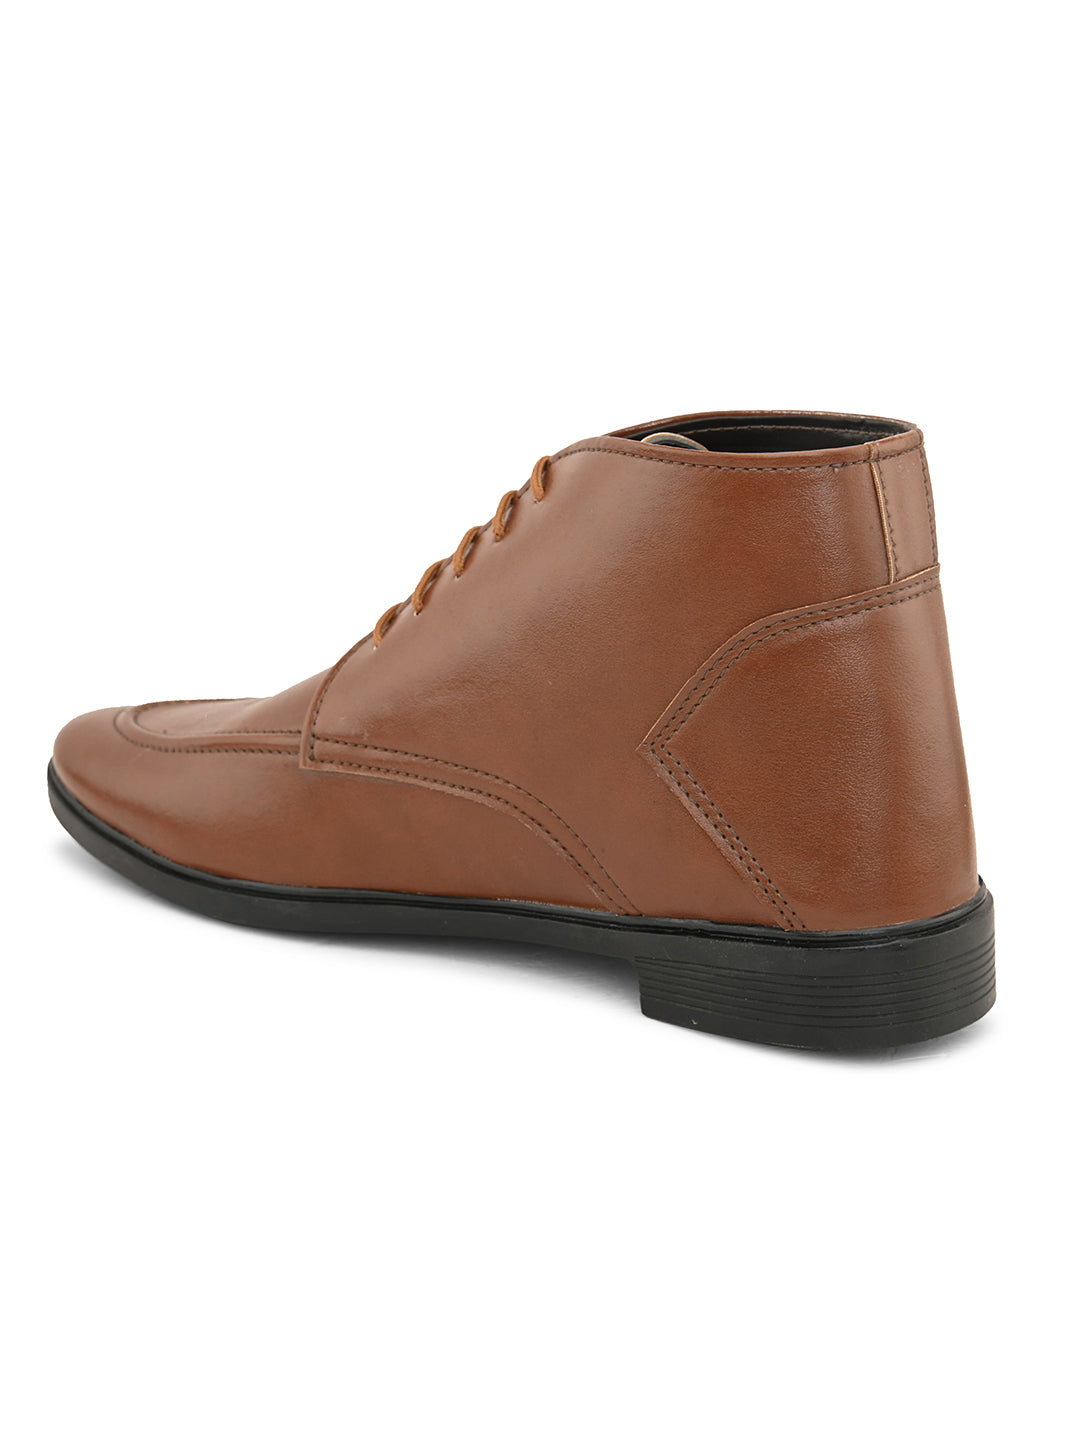 Woakers Mens Comfort Shoes  HR-FORMAL-TAN